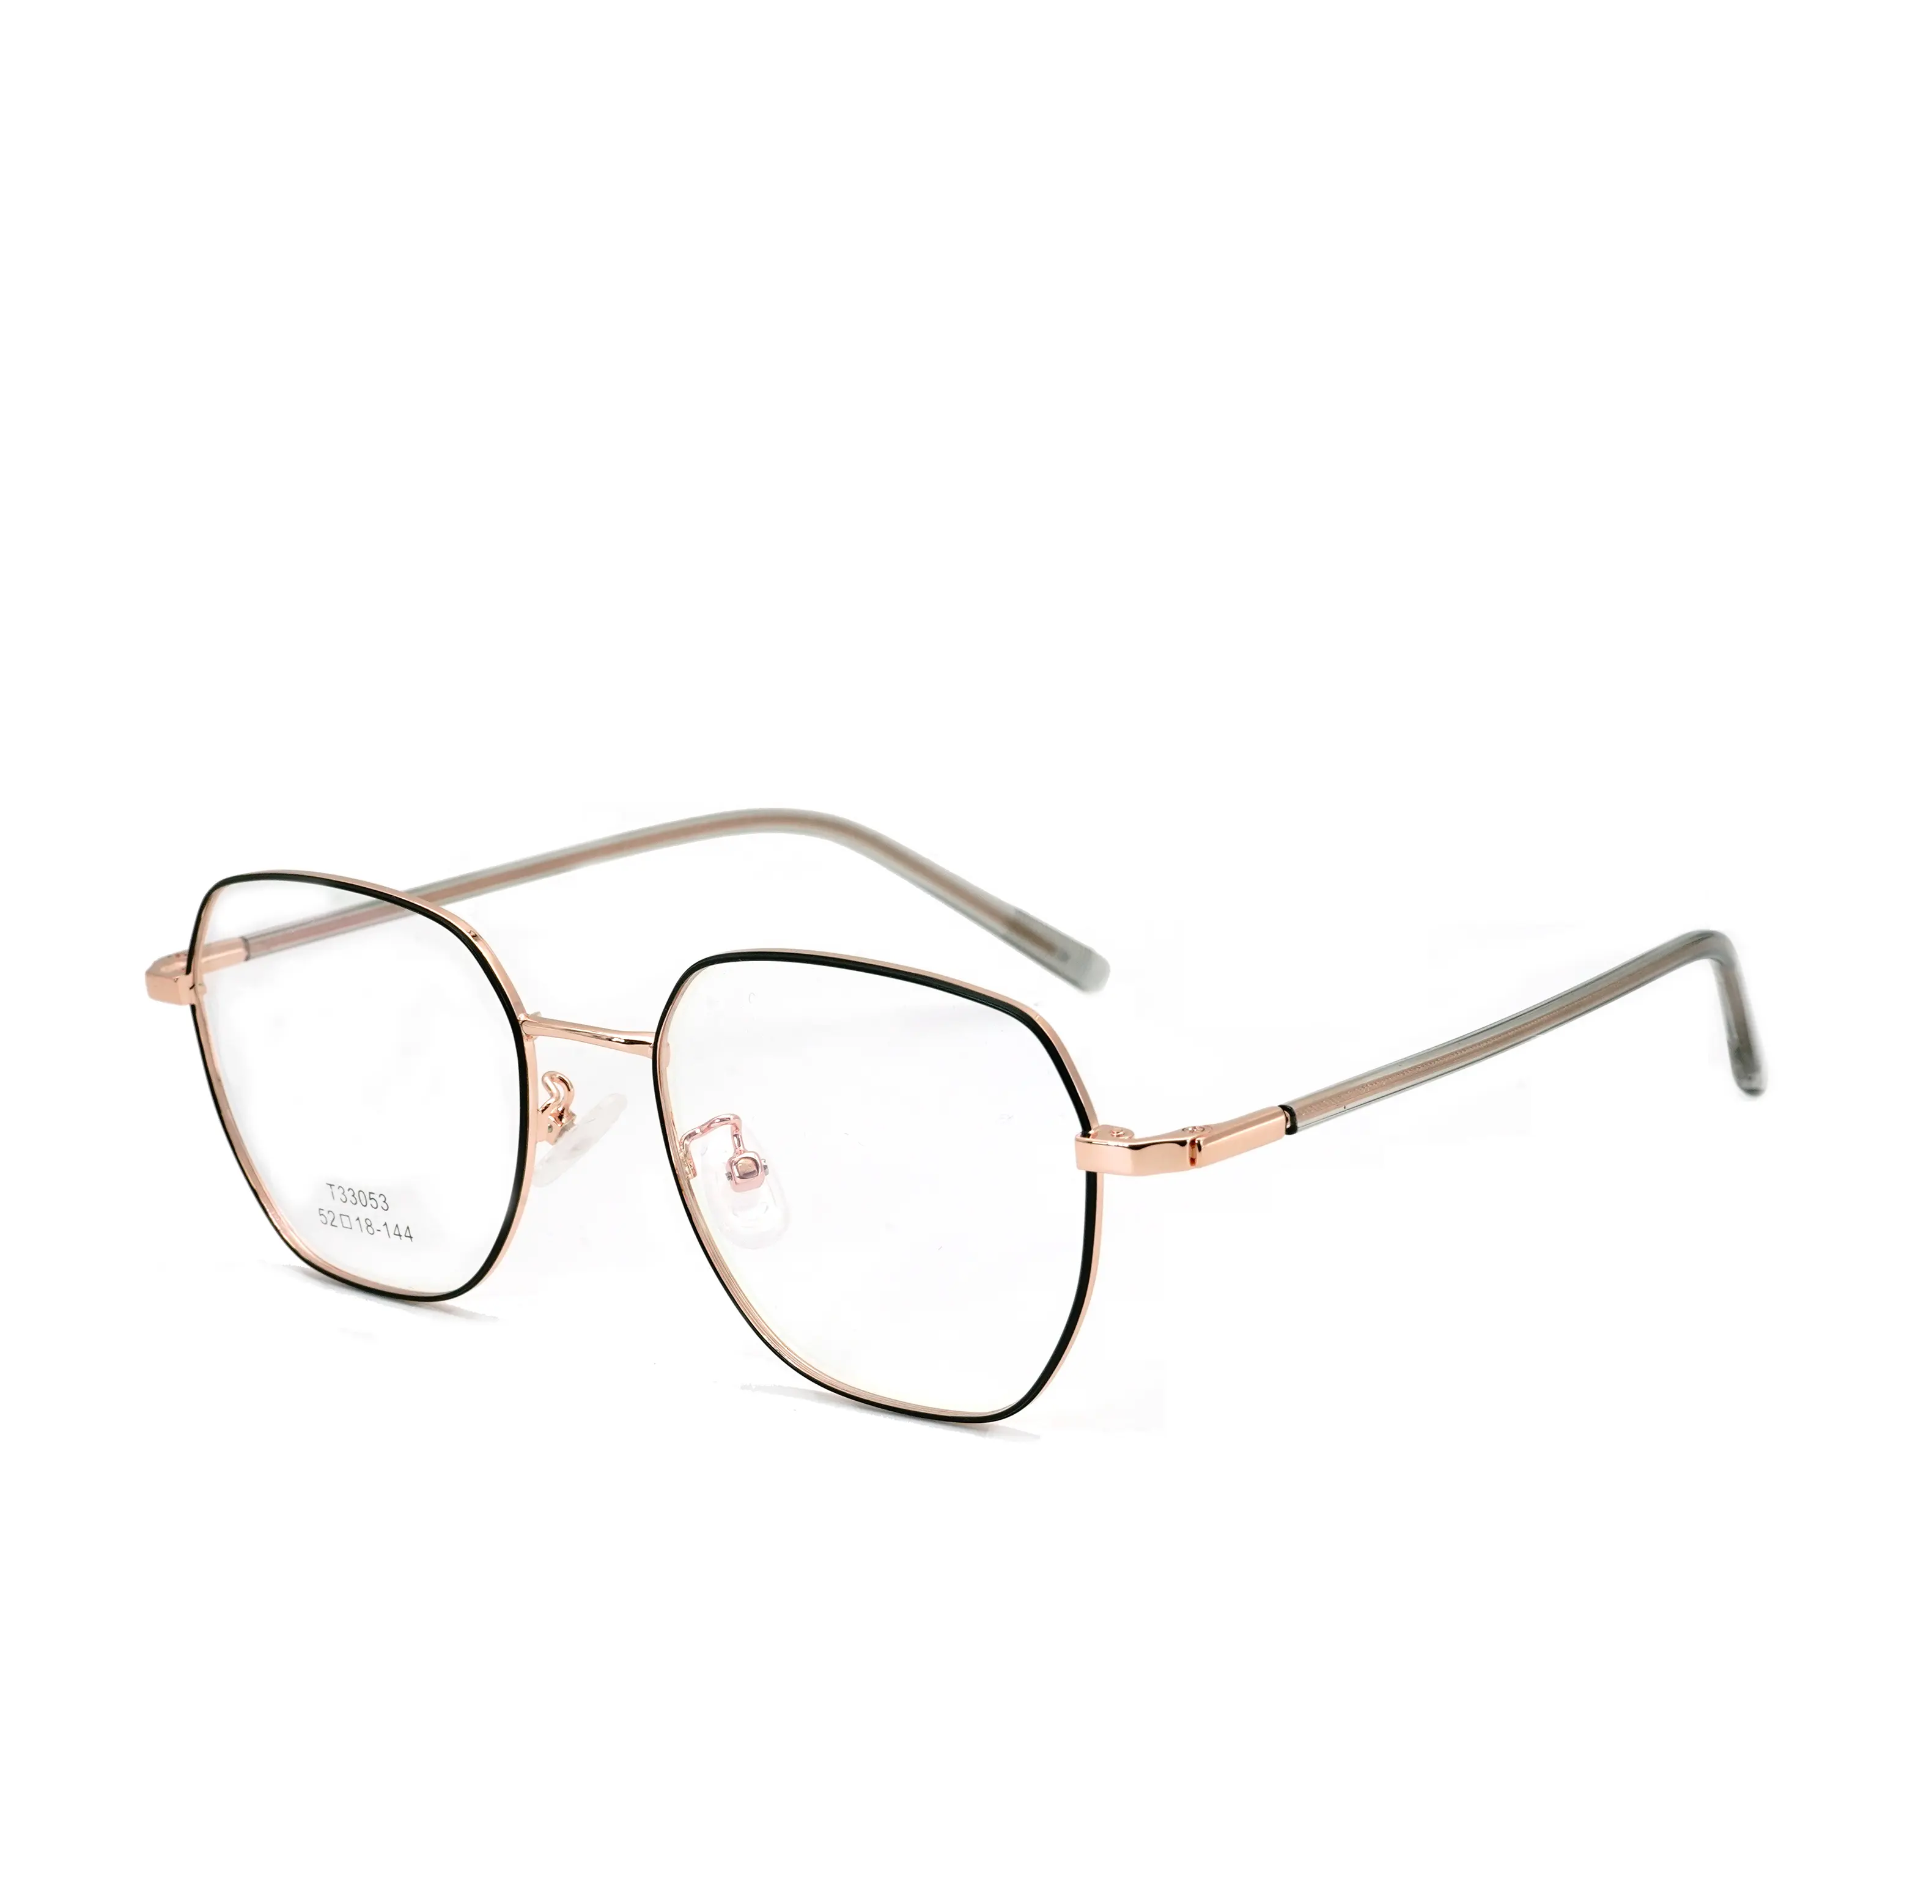 Designer Custom Branded Korean Fashion Eyewear Stainless Steel Metal Eyeglasses Thin Optics Blue Prescription Glasses Frame